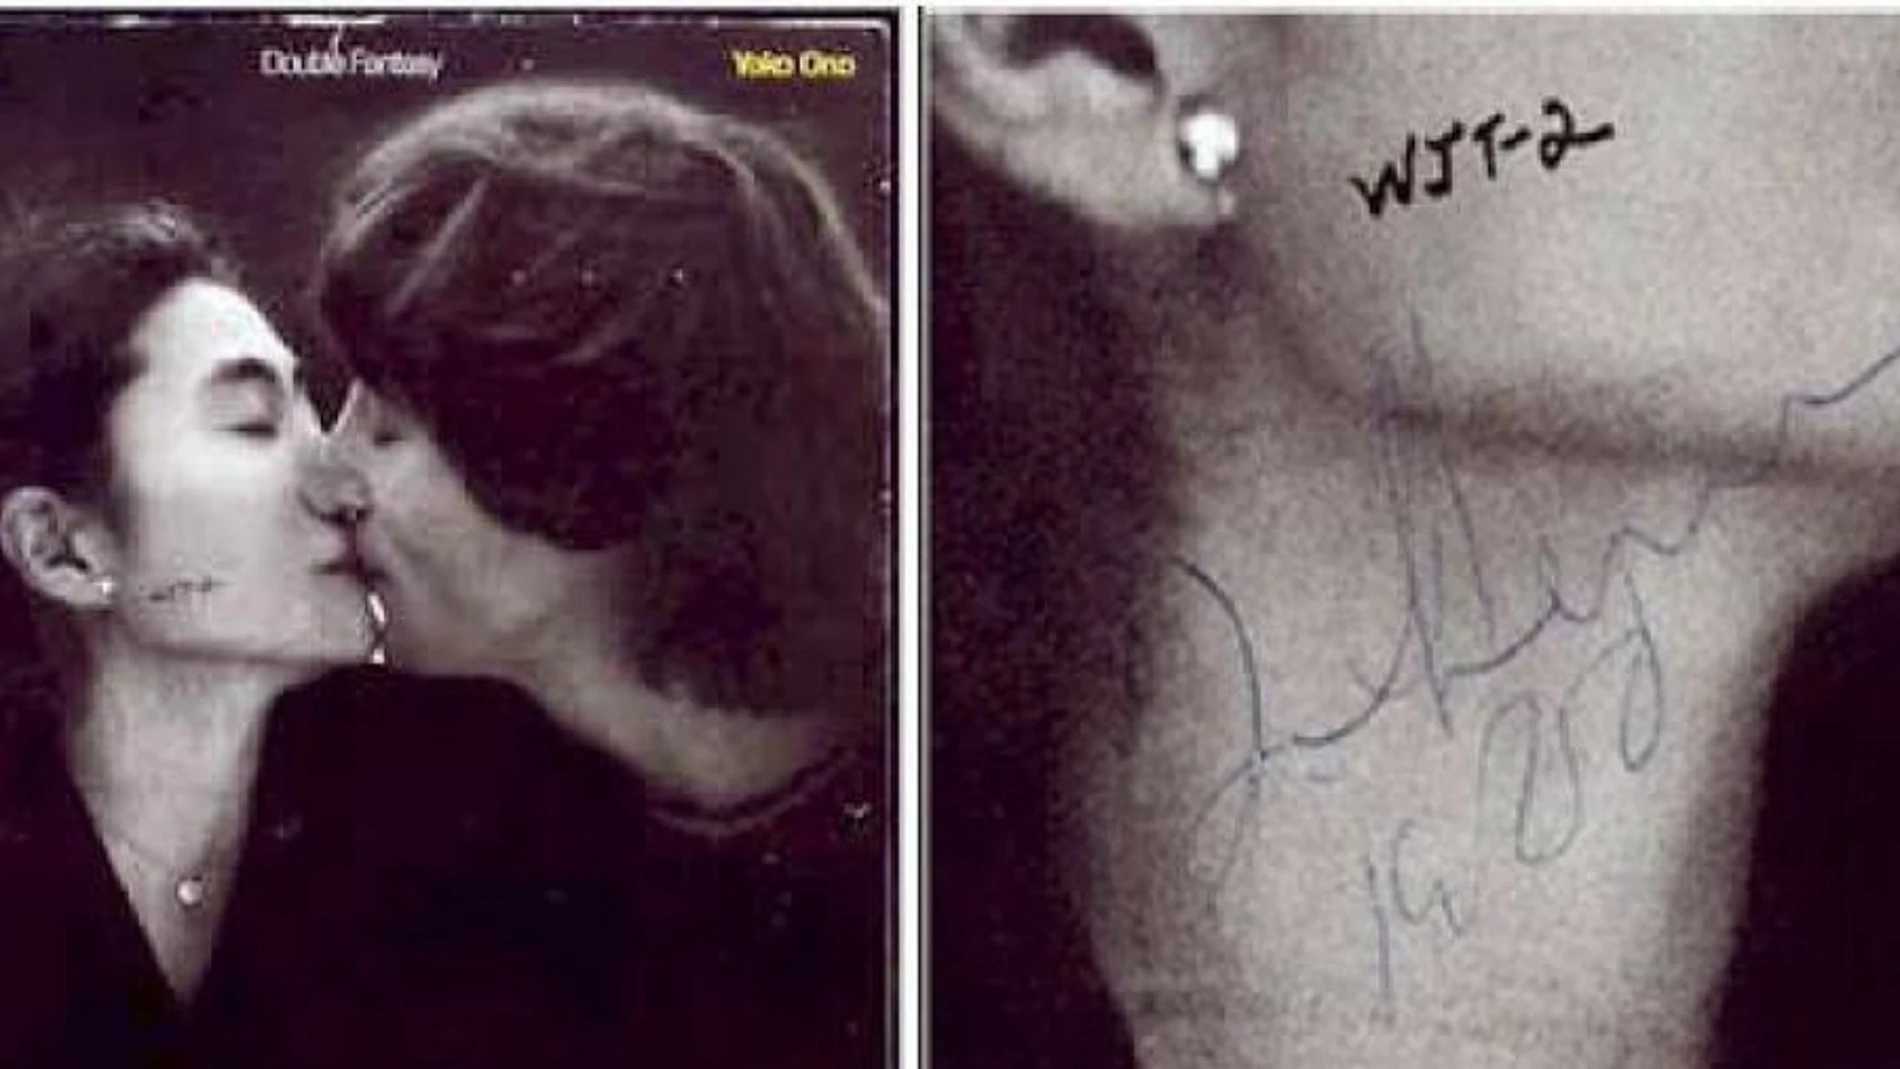 Carátula del disco 'Double Fantasy' firmado por John Lennon